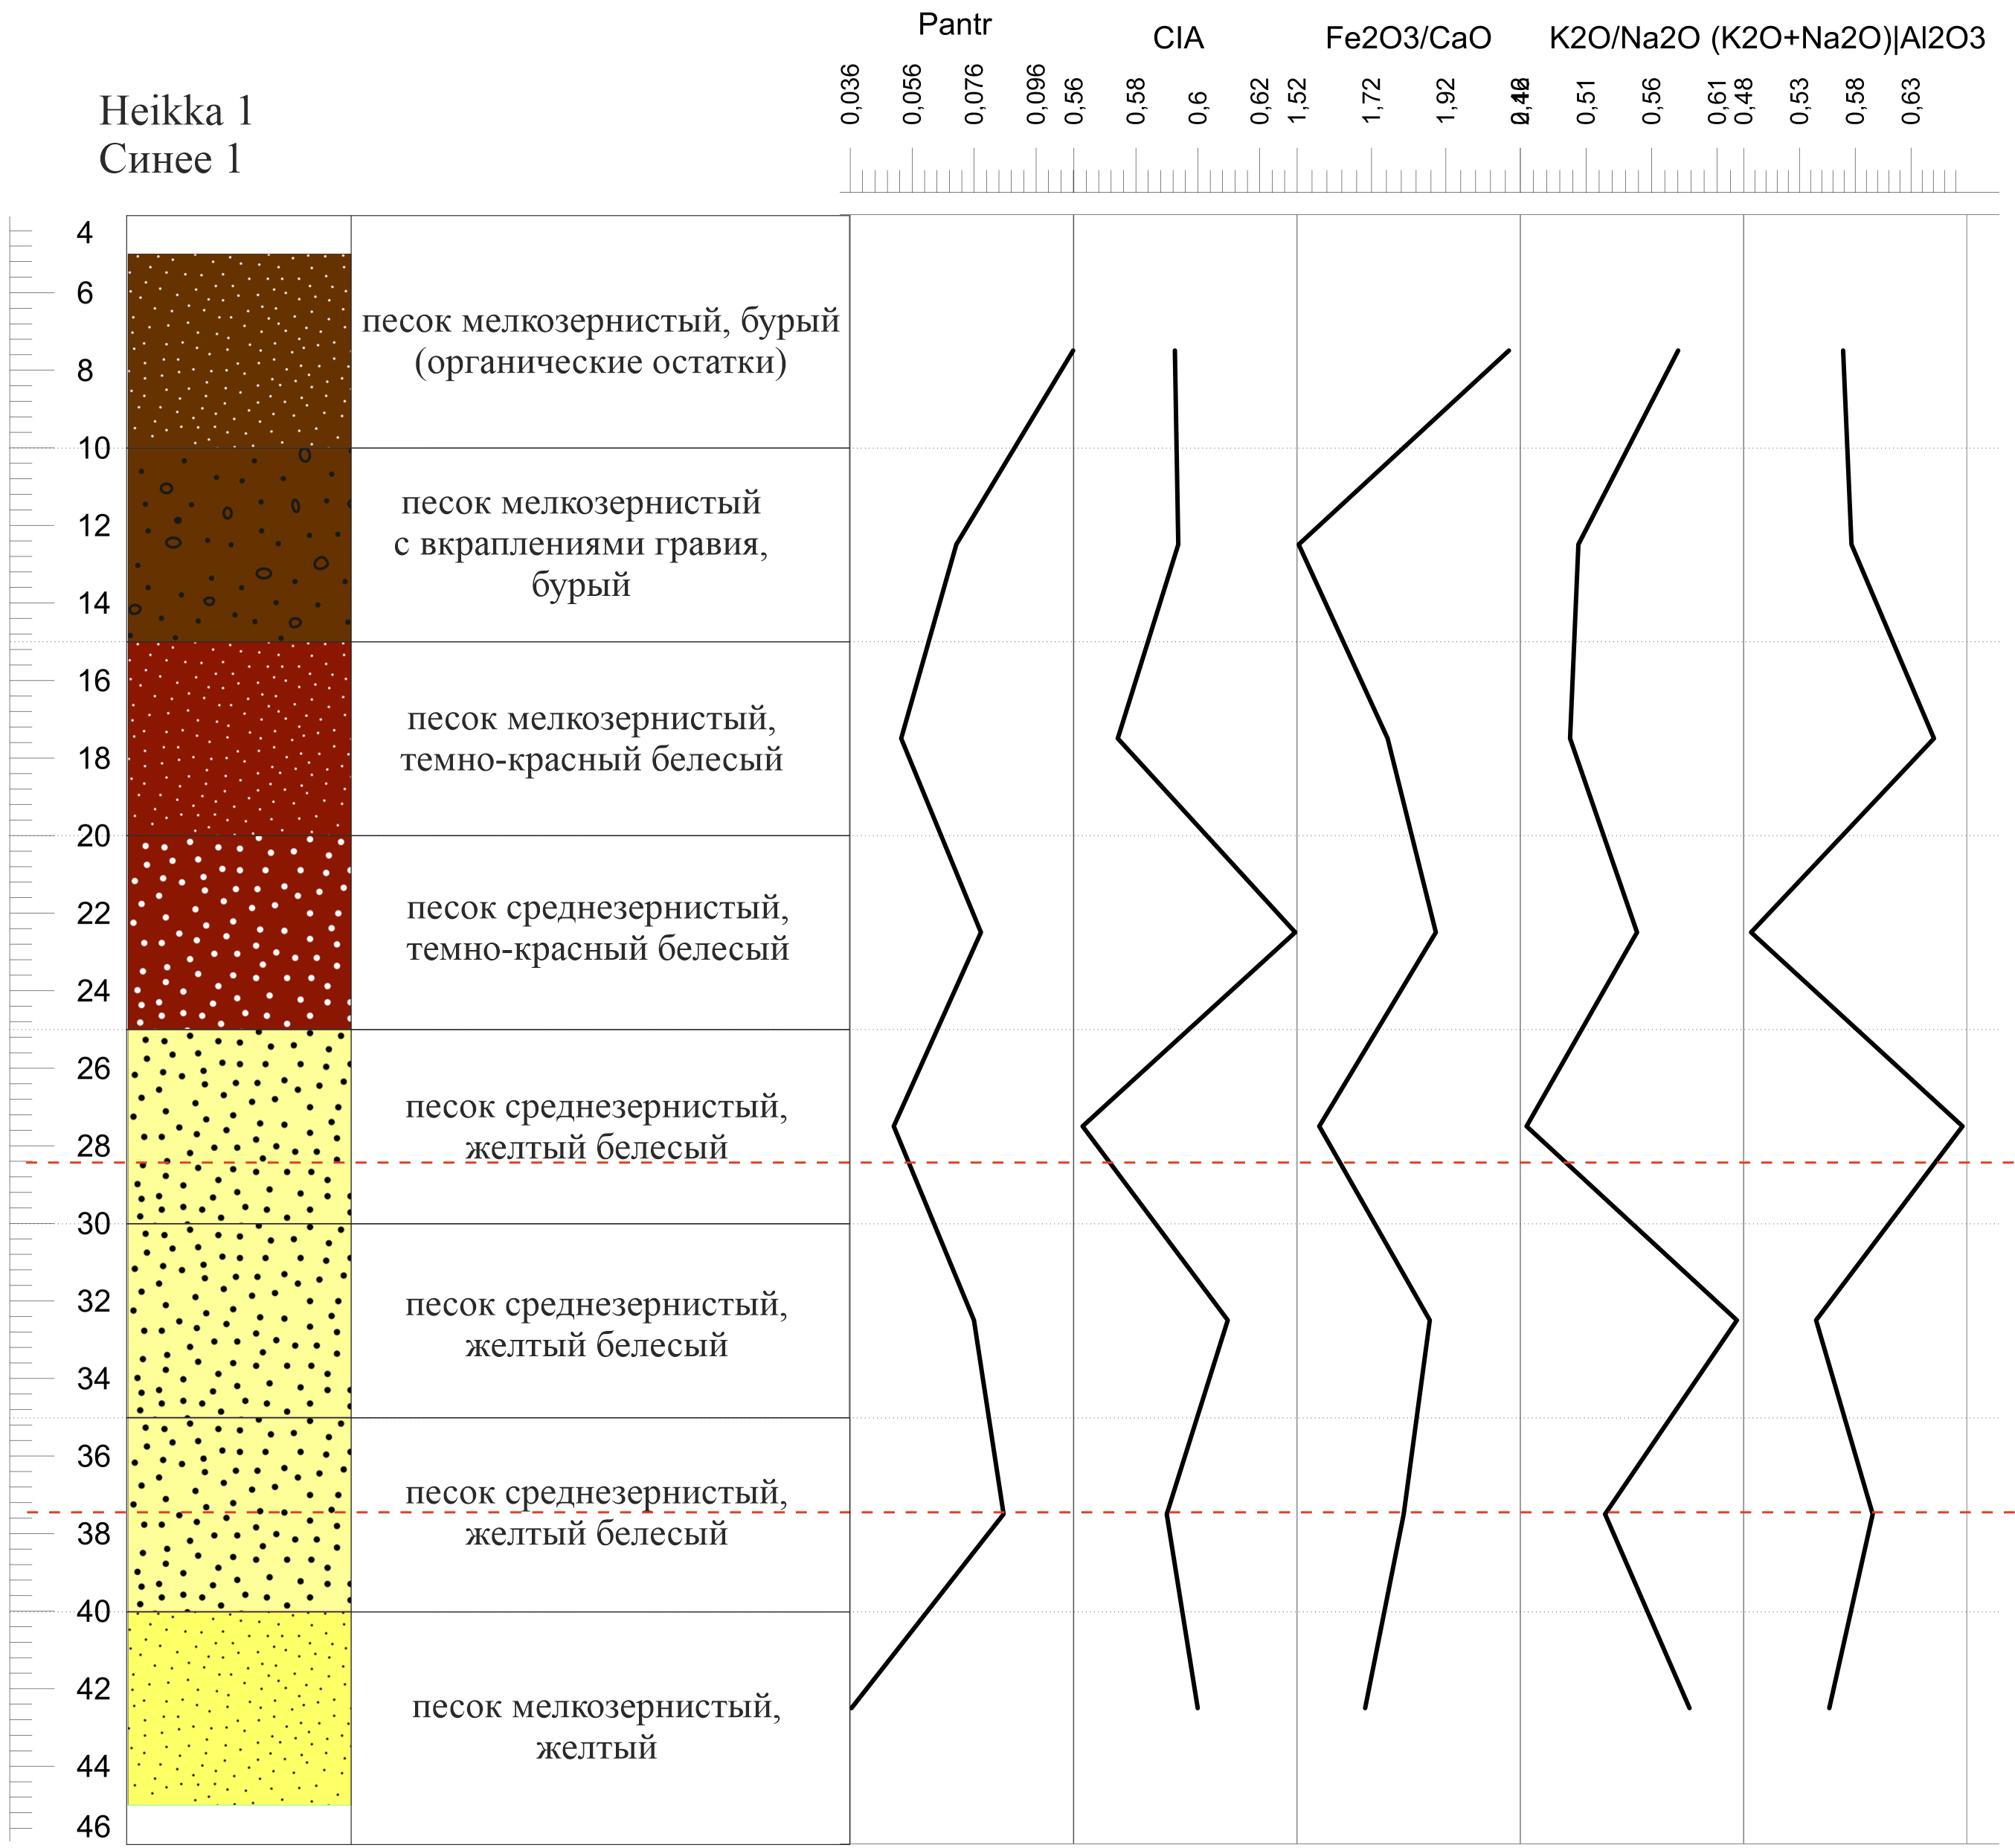 Графики изменения показателей геохимических индикаторов ландшафтно-климатических условий и антропогенной активности для археологического памятника «Синее 1 (Heikka 1)»